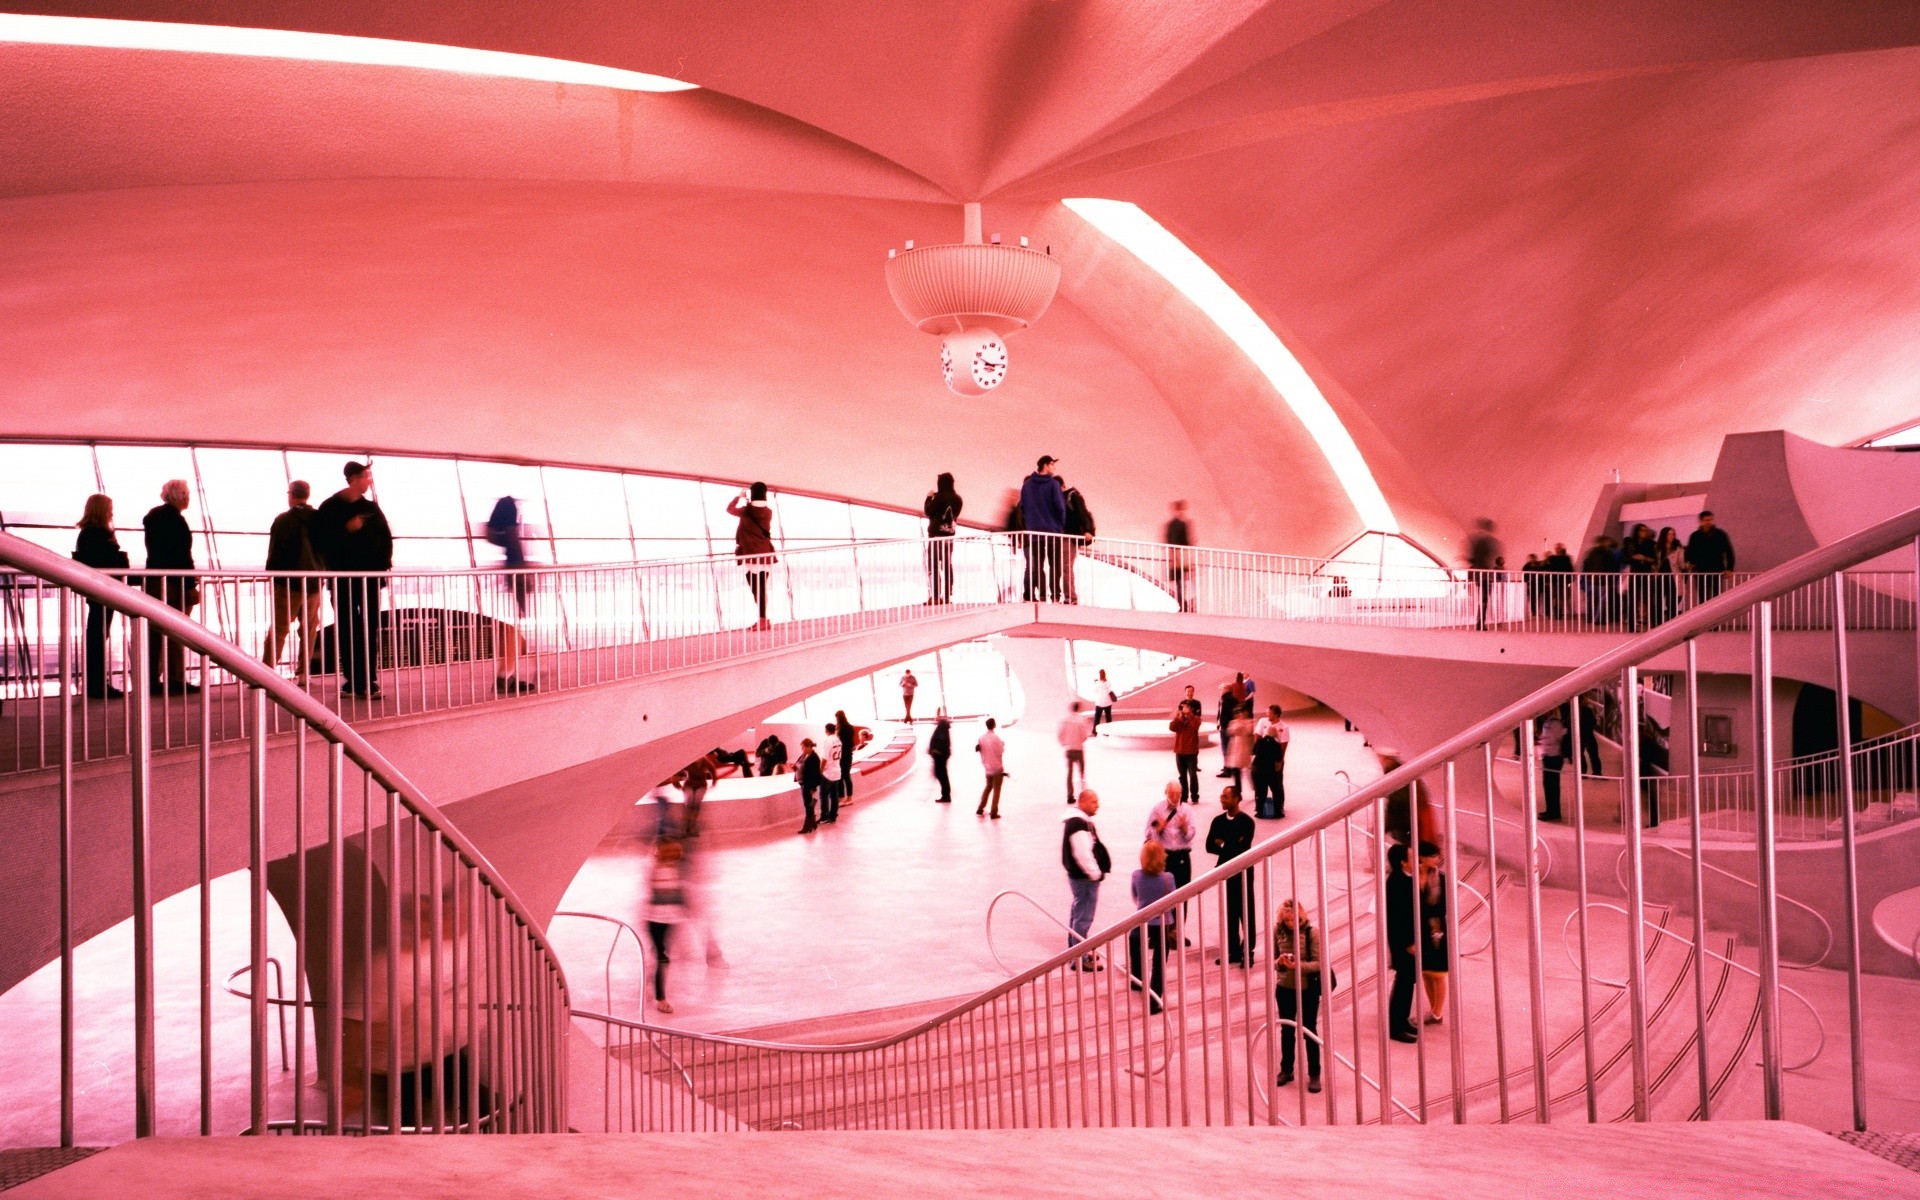 америка аэропорт в помещении пробка бизнес архитектура внутри отражение лобби современные дом путешествия город городской свет эскалатор потолок